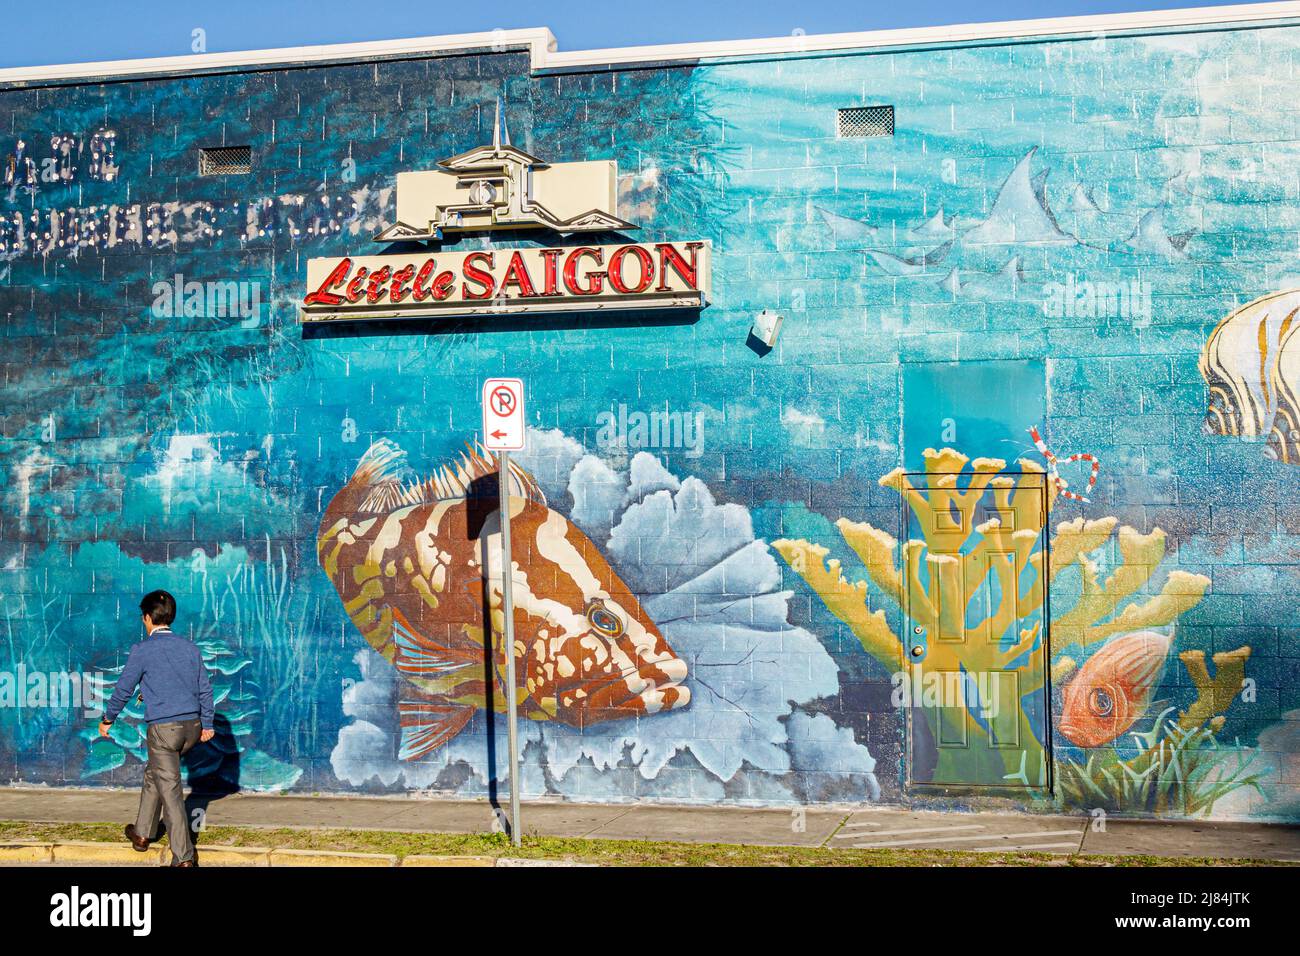 Orlando Florida, East Colonial Drive, Little Saigon, Asian hombre mural pared edificio étnico barrio Foto de stock